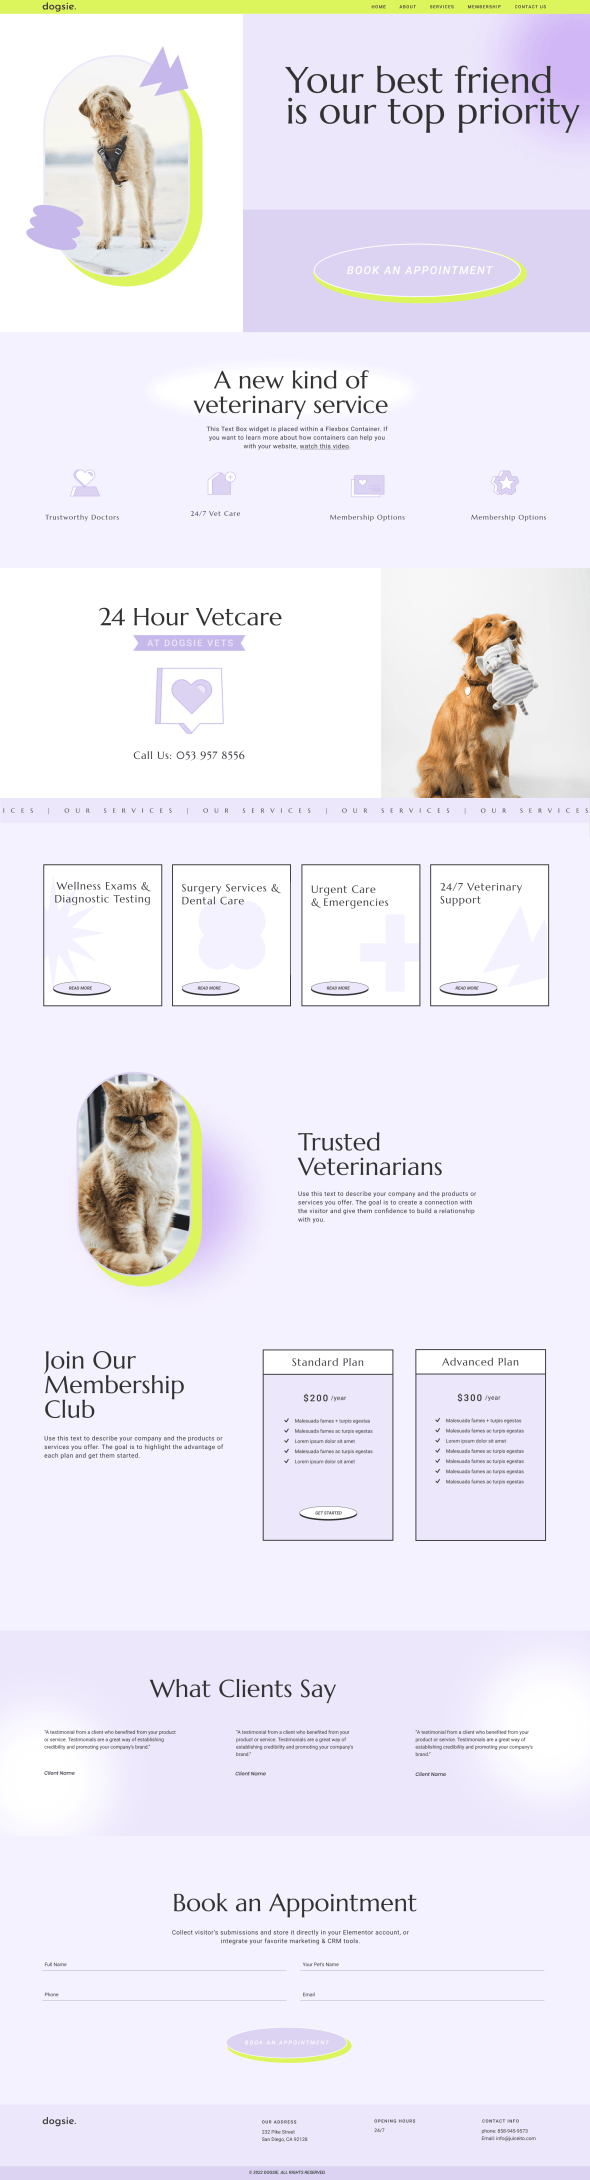 宠物诊所动物医院宠物服务中心网站成品模板_一键导入式快速建站模板